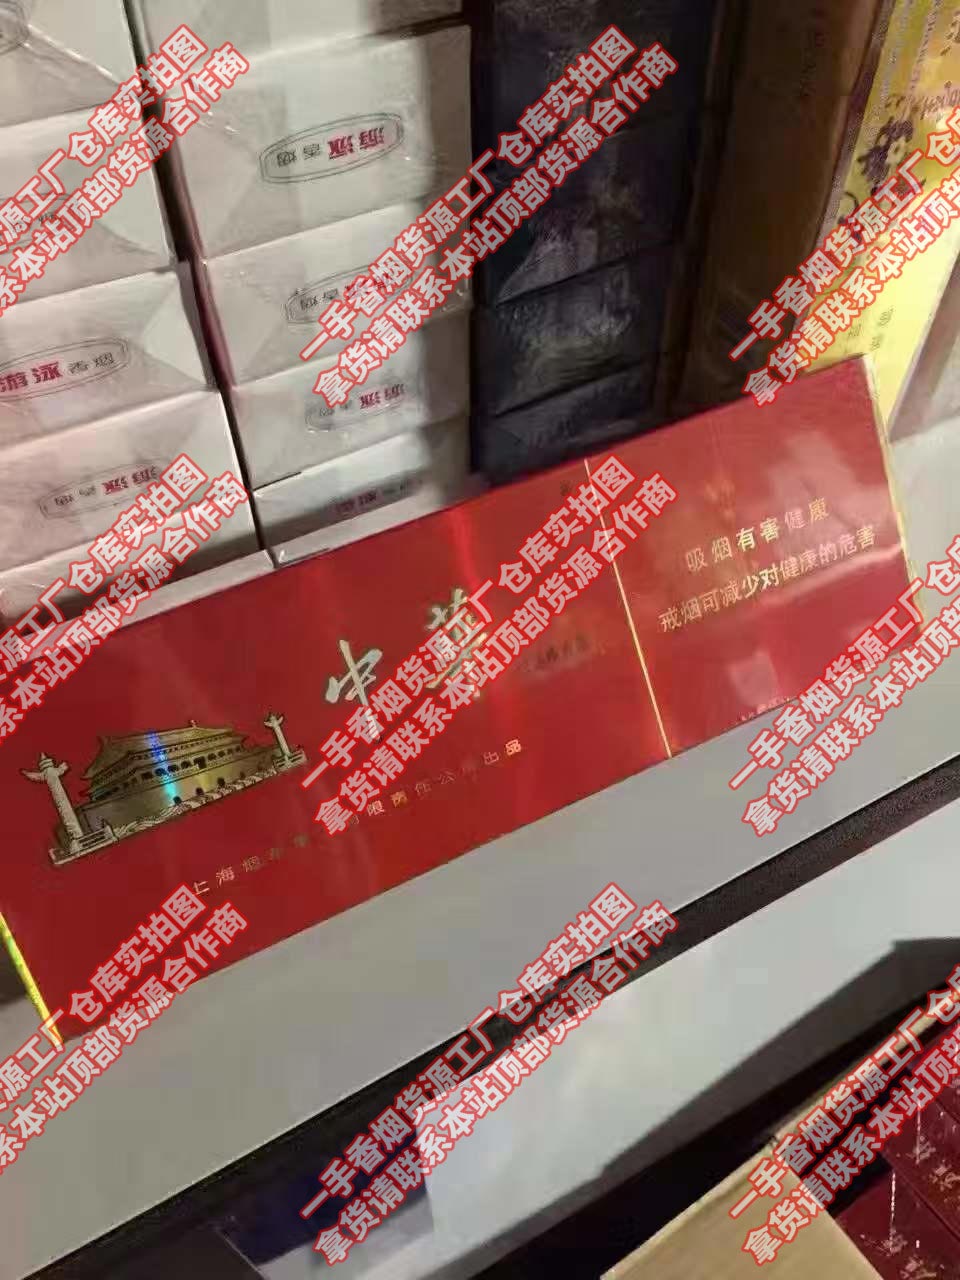 正品香烟一手货源批发,中国烟草网上零售超市官网,微信香烟批发商